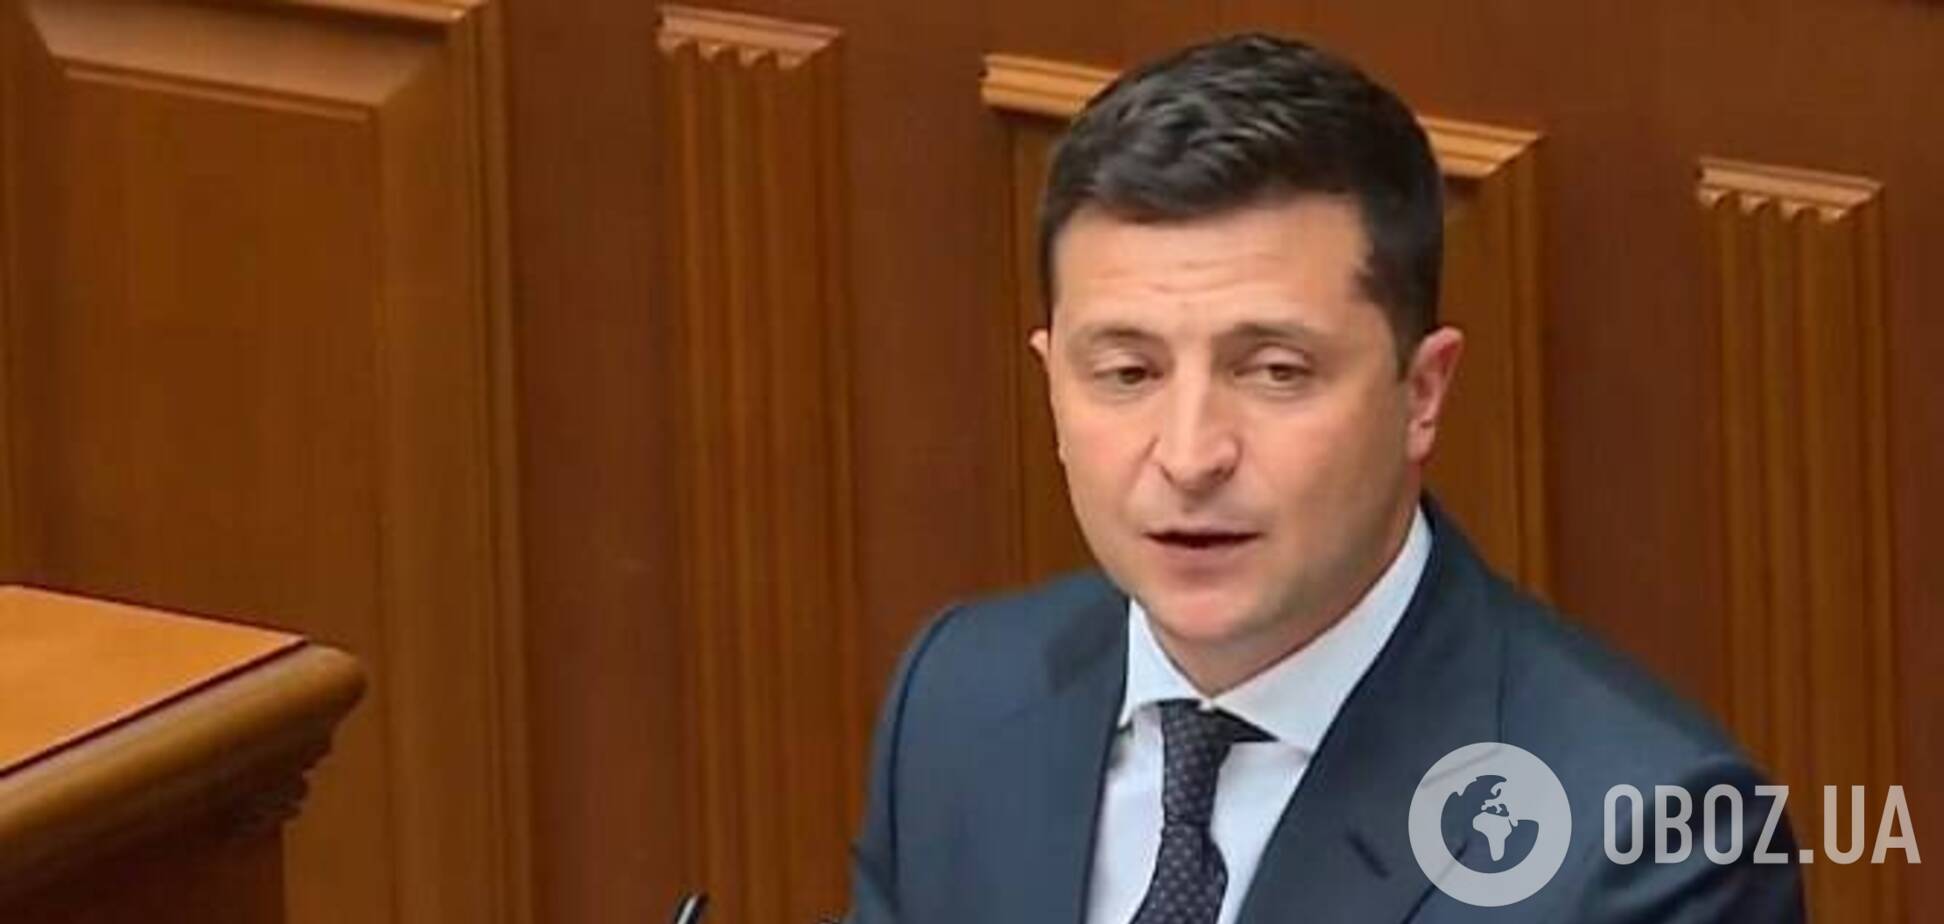 Зеленский выступил с трибуны перед Радой и президентами Украины